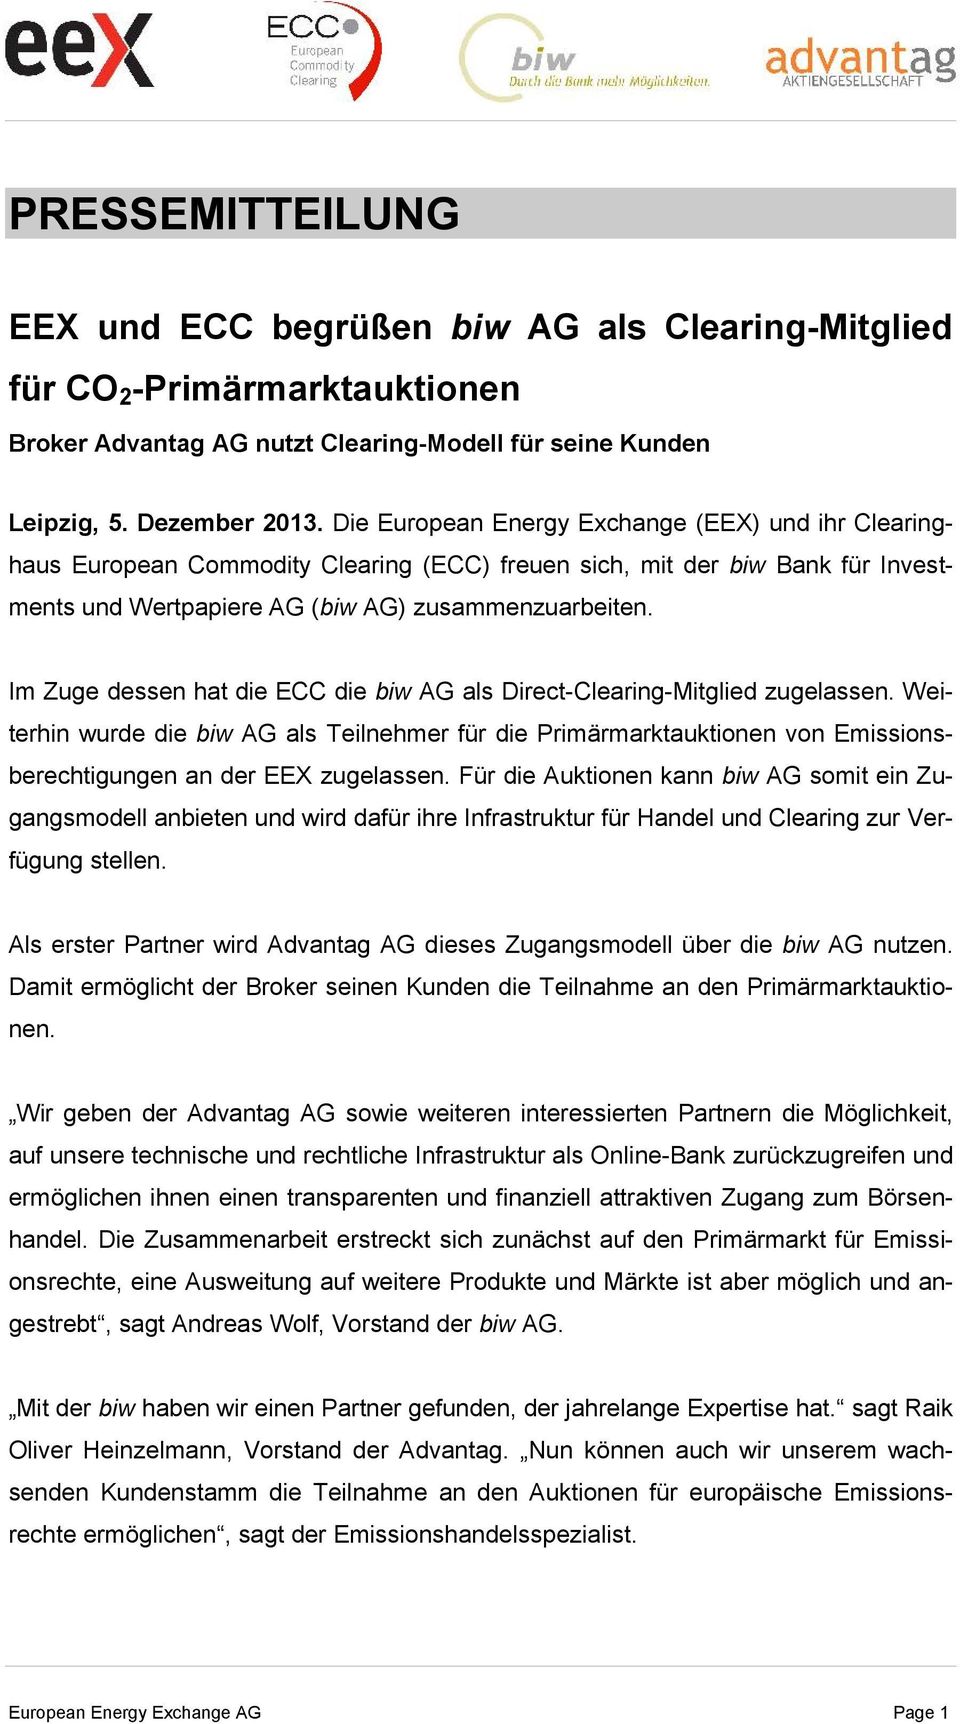 Im Zuge dessen hat die ECC die biw AG als Direct-Clearing-Mitglied zugelassen. Weiterhin wurde die biw AG als Teilnehmer für die Primärmarktauktionen von Emissionsberechtigungen an der EEX zugelassen.